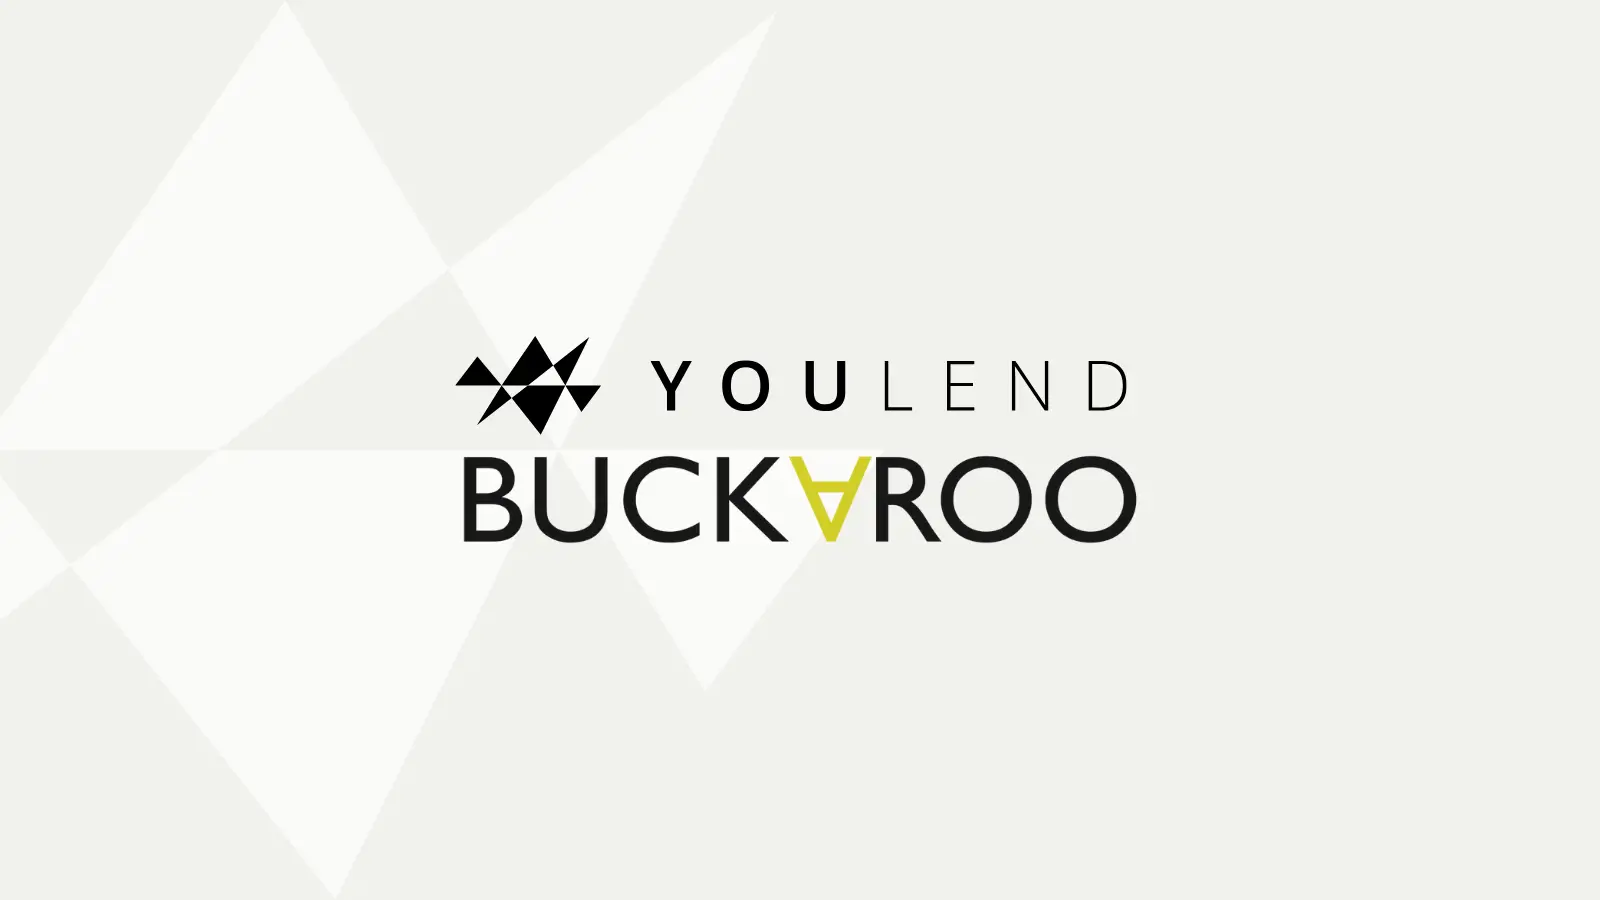 Lenen voor het mkb korte financiering payment based lenen via YouLend Buckaroo